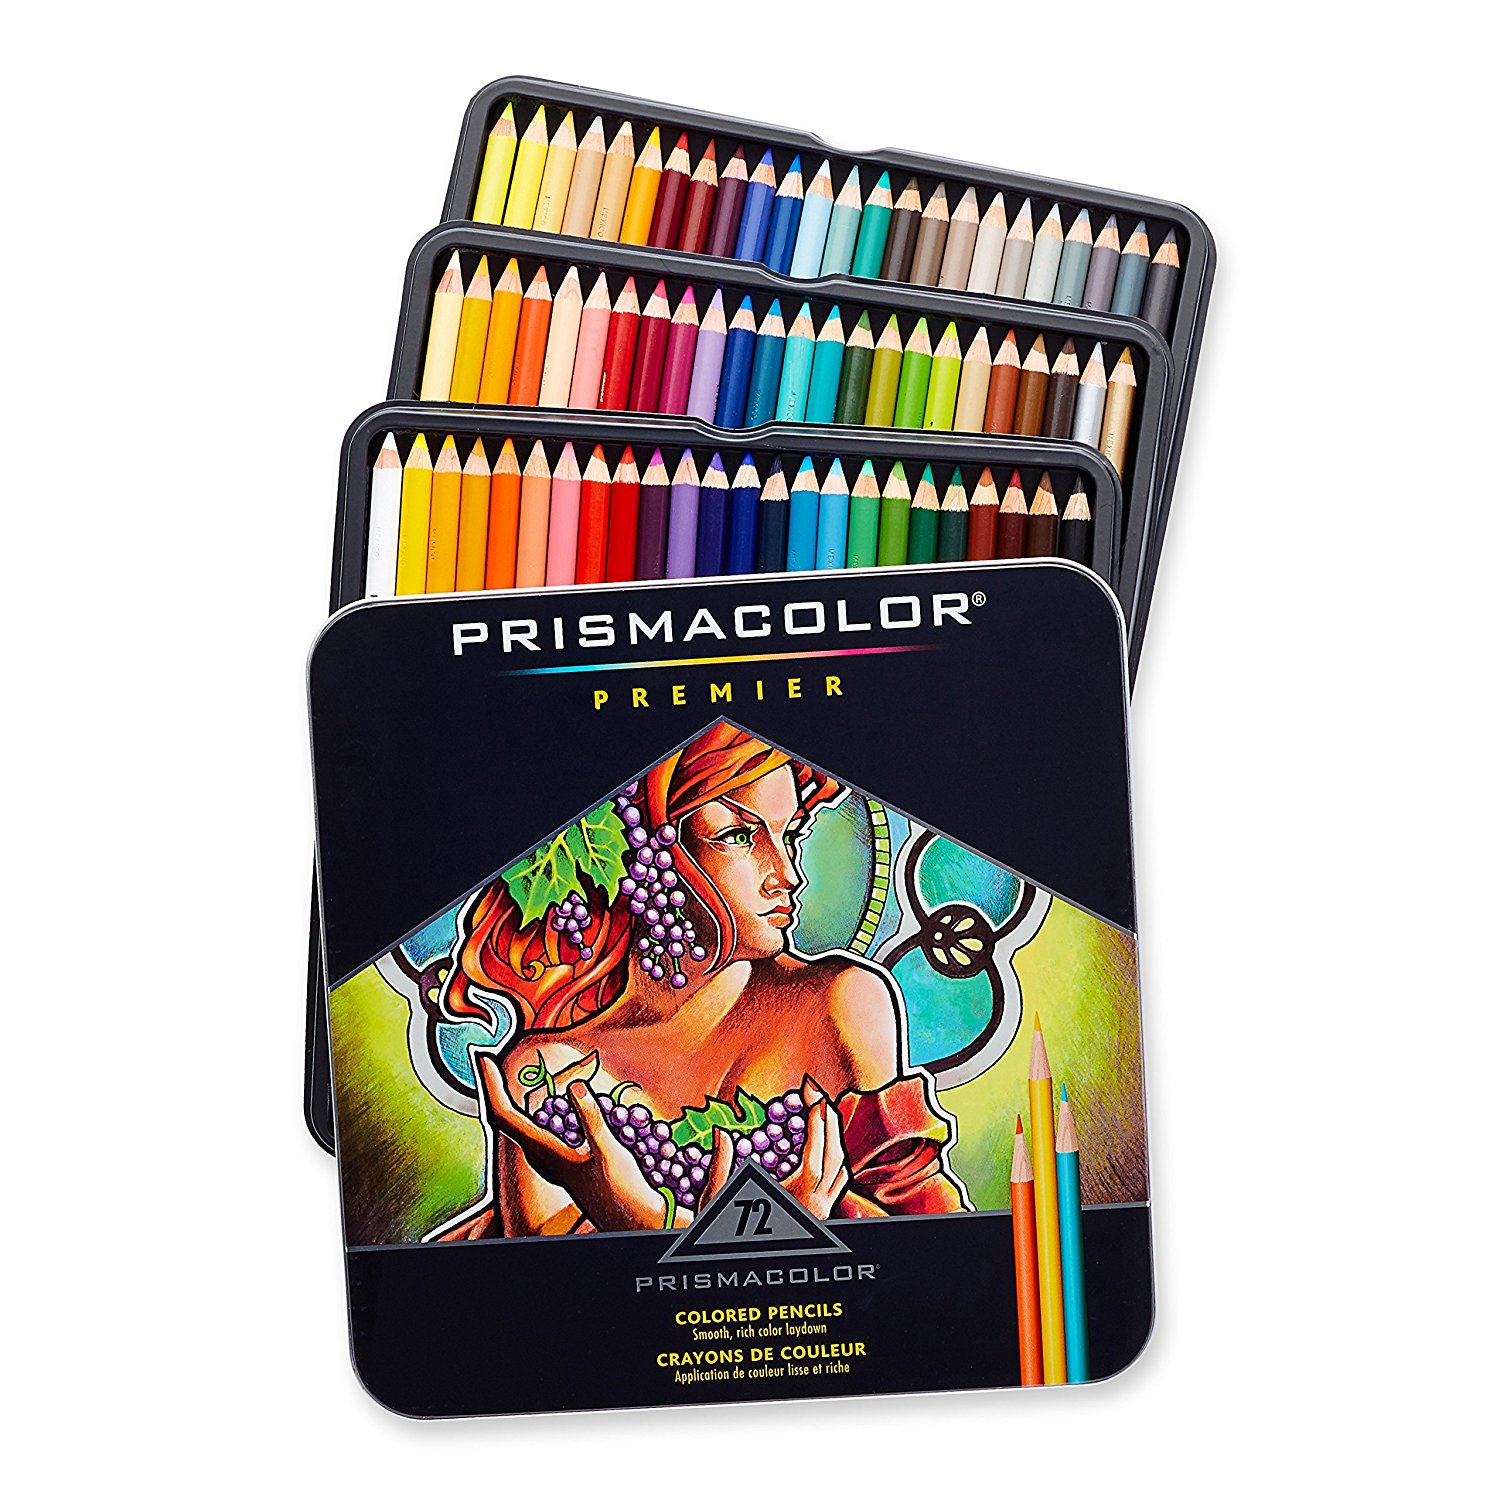 Prismacolor Premier Colored Pencils, Soft Core, 72 Count – Just $27.99!